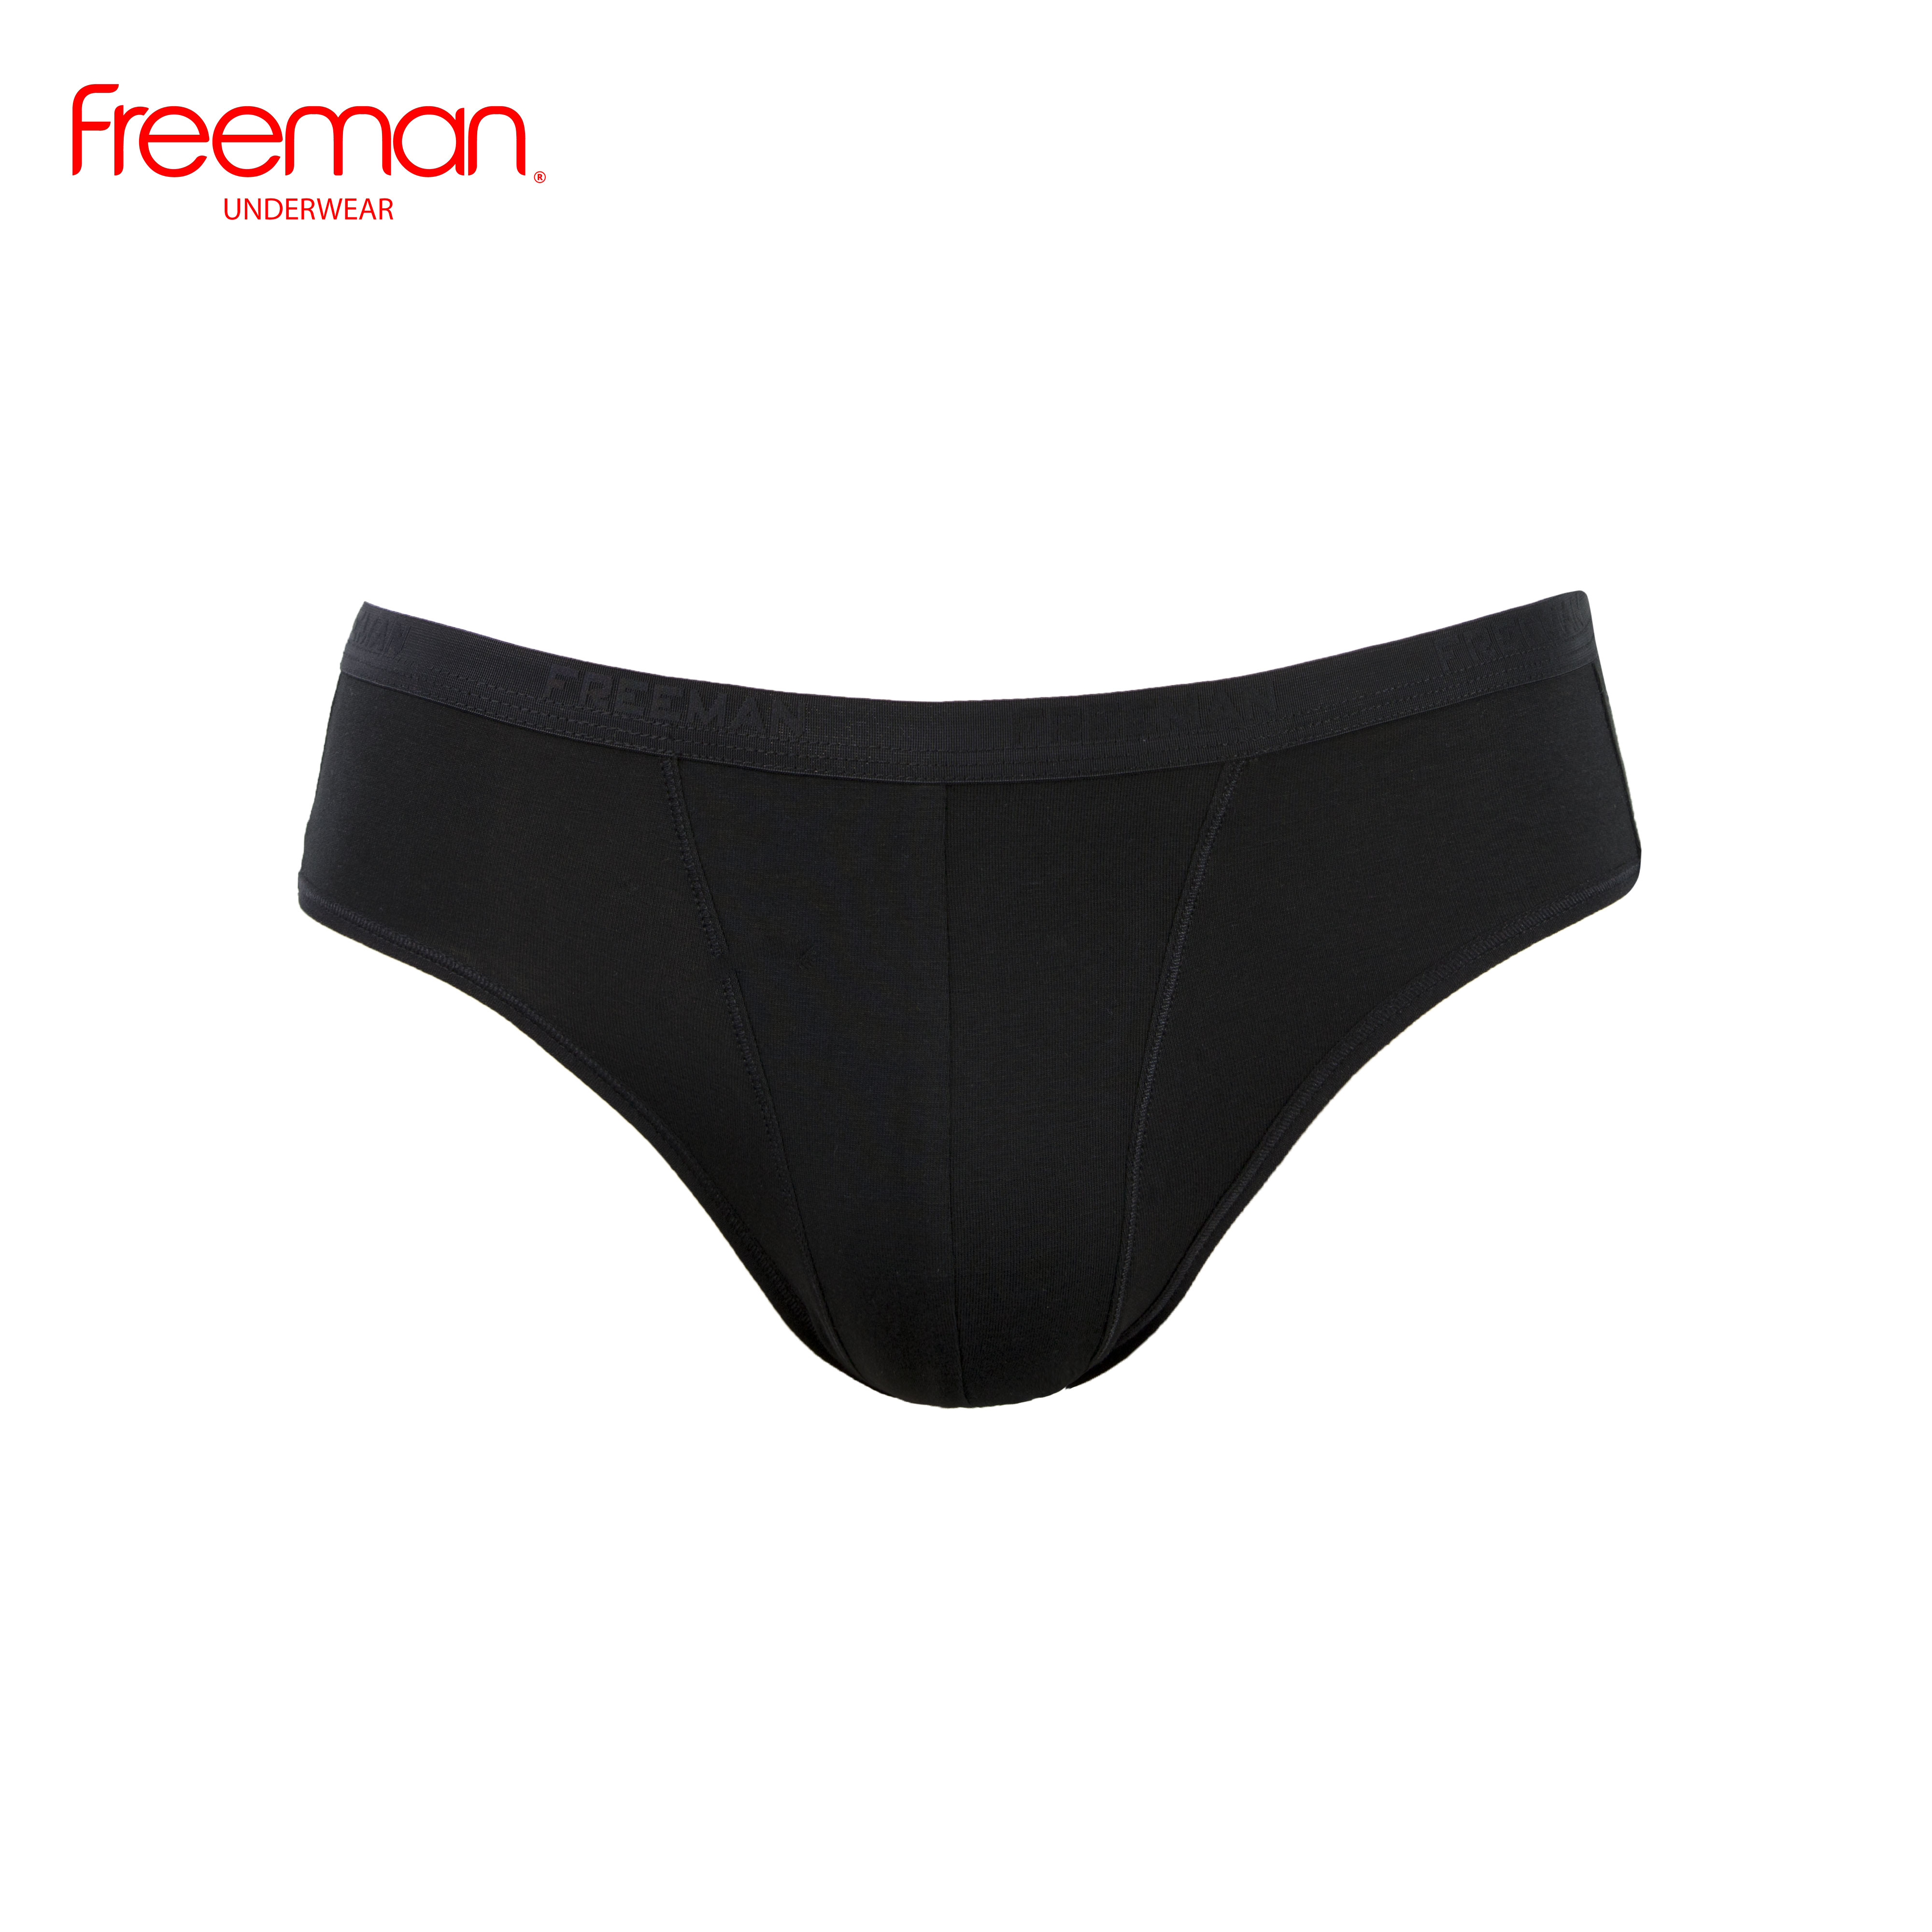 Combo 3 quần lót nam Freeman, chất liệu cotton thấm hút mồ hôi tốt, lưng bản nhỏ thoải mái 6045